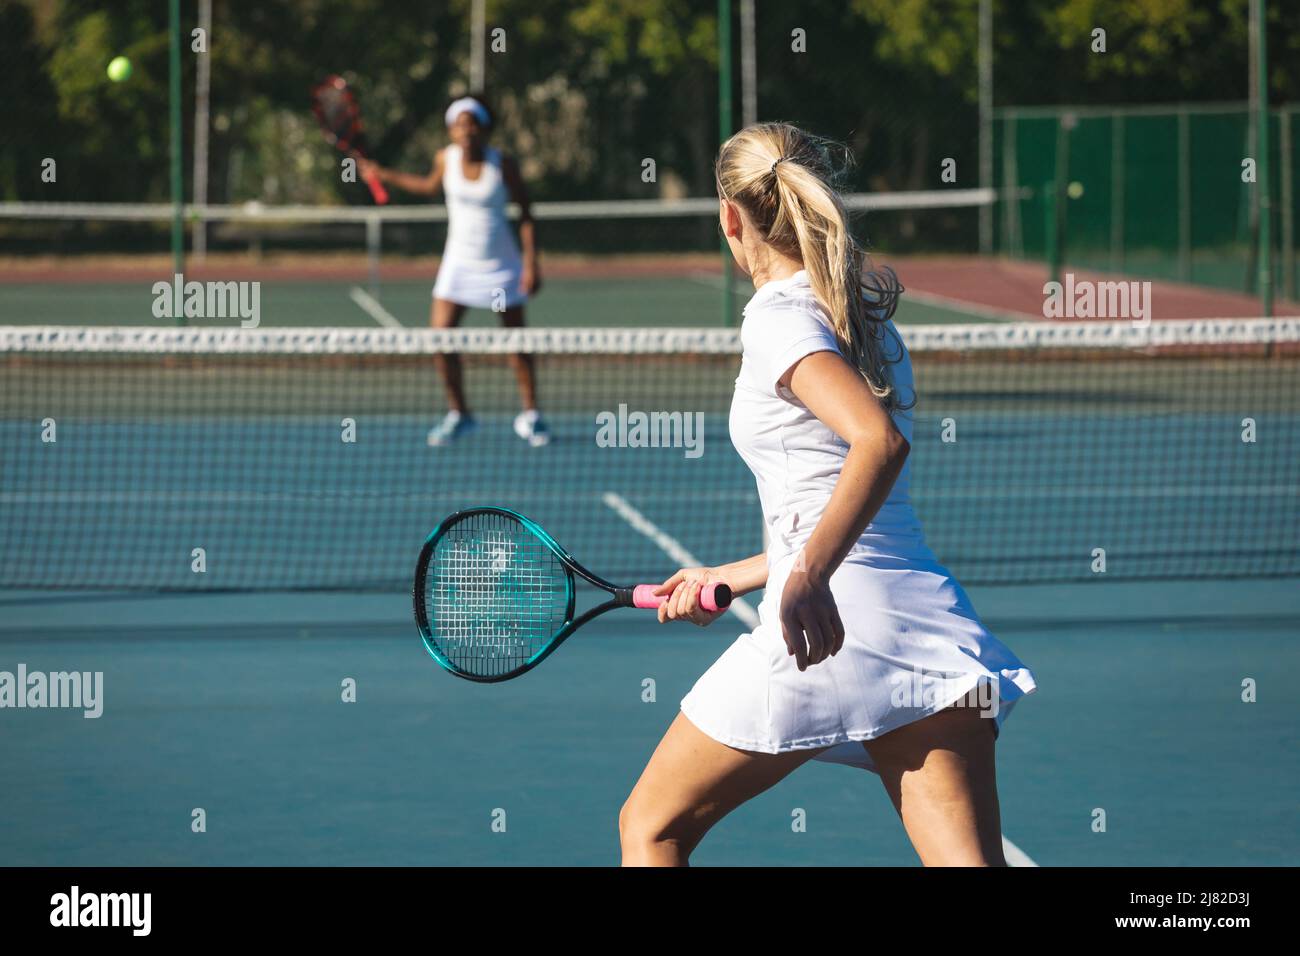 Athlète de race blanche en jouant au tennis avec un concurrent afro-américain sur le terrain Banque D'Images